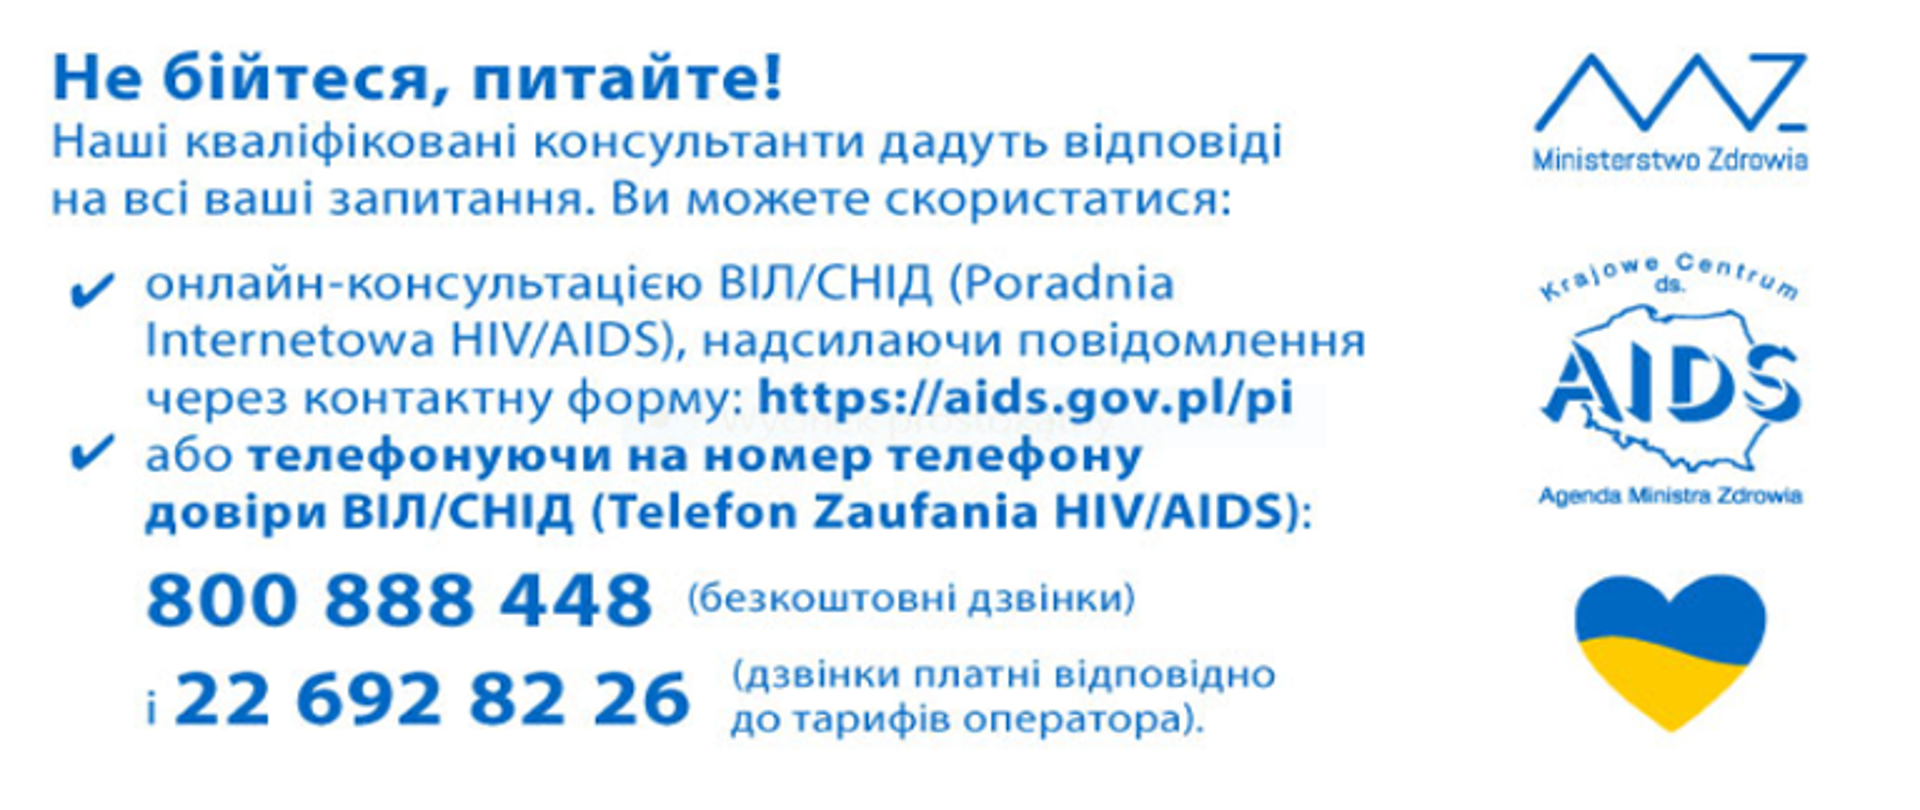 Informacje dotyczące HIV i AIDS dla bywateli Ukrainy